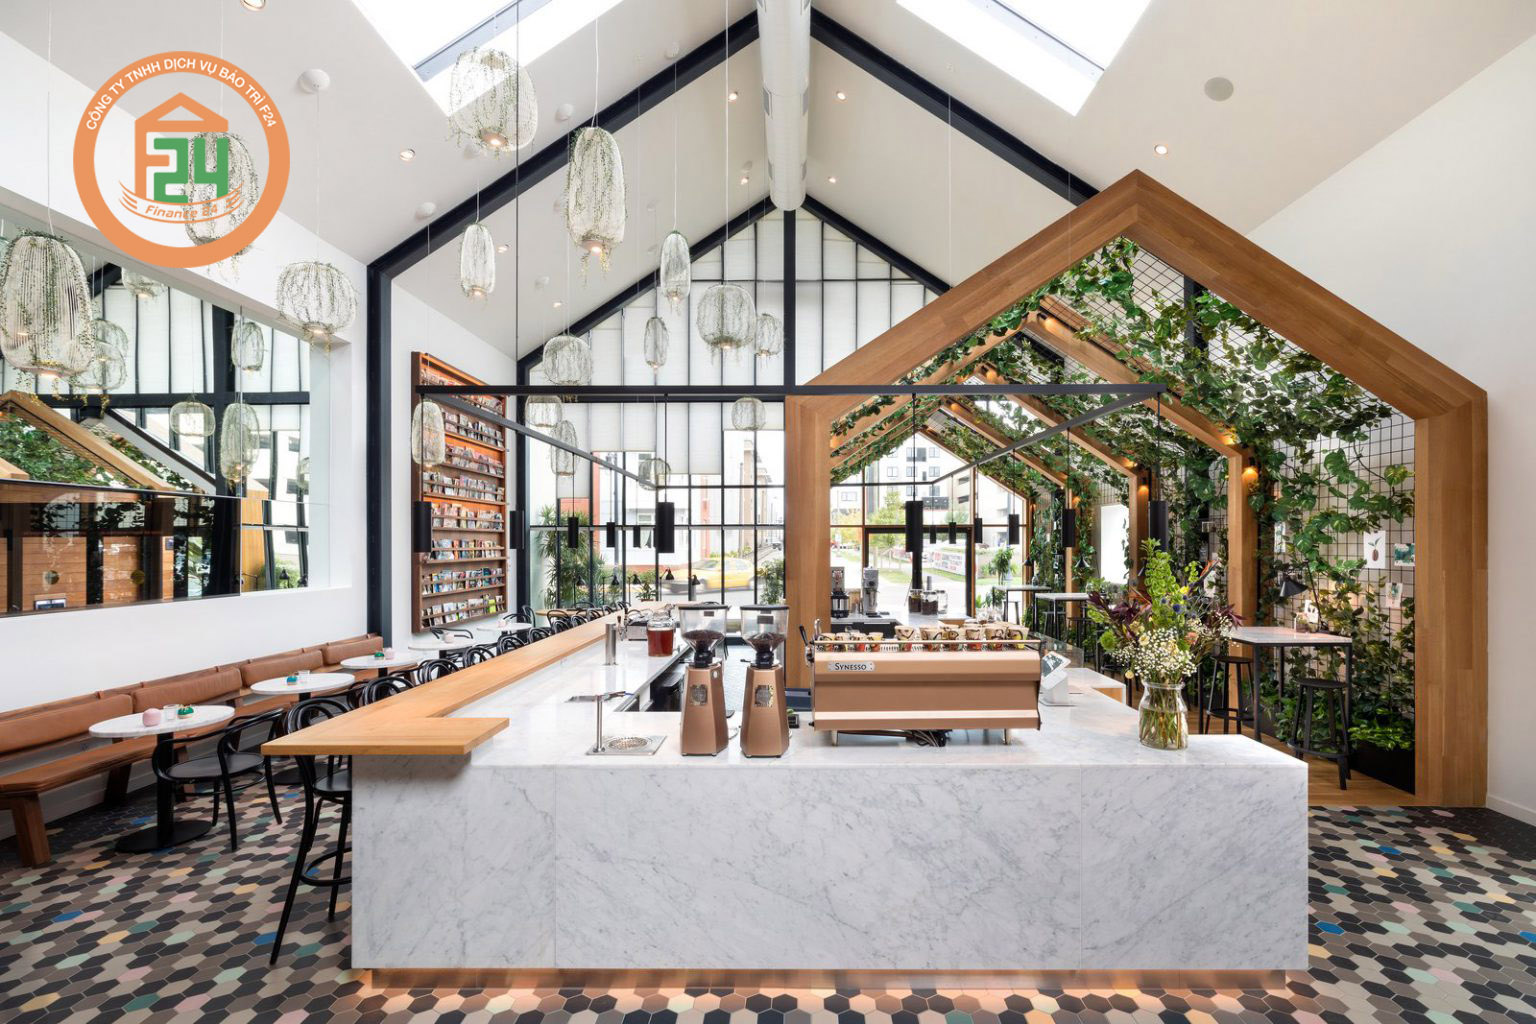 75 - Ý tưởng thiết kế nội thất quán cafe với không gian mở linh hoạt